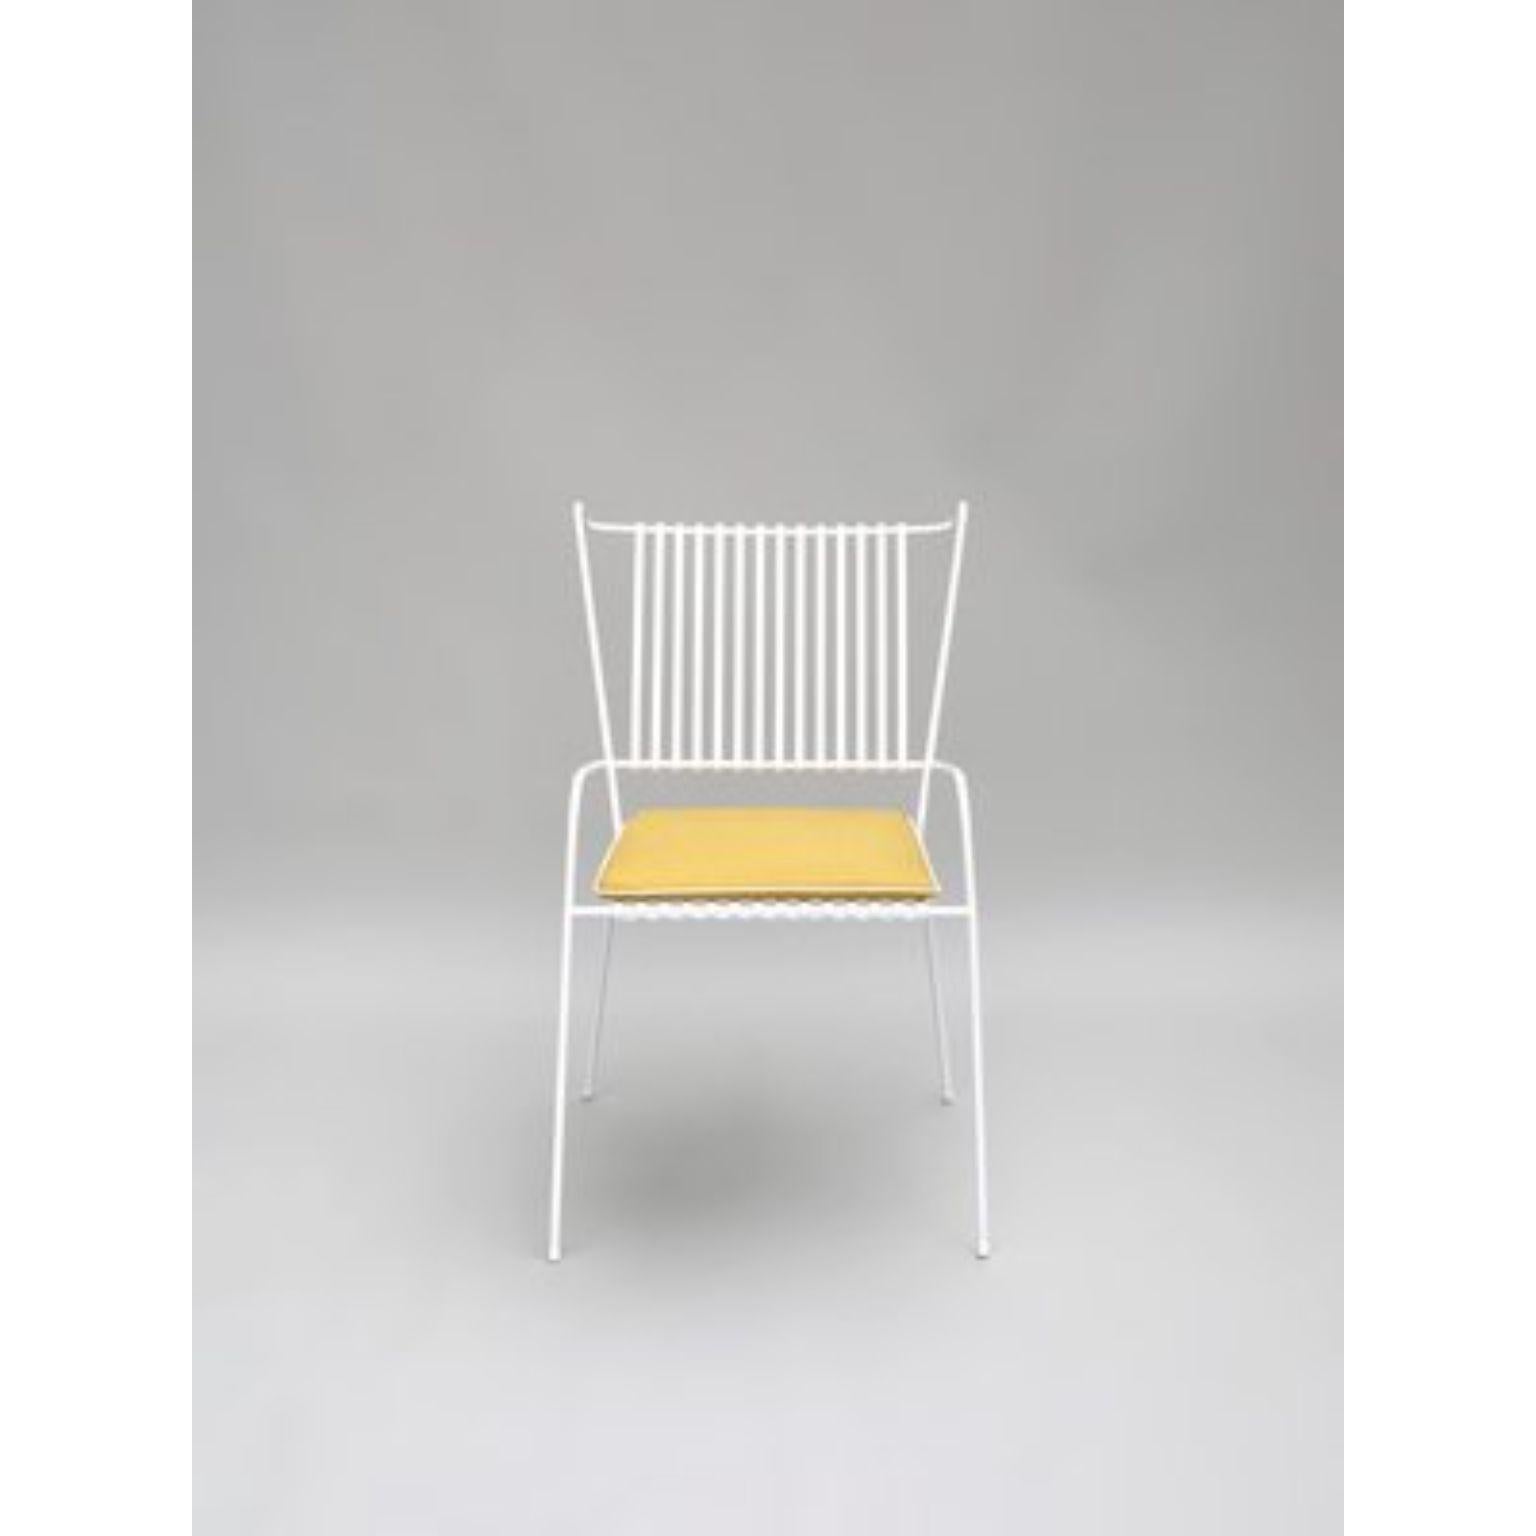 Weißer Capri-Stuhl mit Sitzkissen von Cools Collection'S
MATERIALIEN: Pulverbeschichteter Edelstahl, für den Außenbereich geeignetes Gewebe.
Abmessungen: Stuhl: B 53 x T 60 x H 86 cm (Sitzhöhe 45 cm).
Kissen: B 42 x T 42 x H 2cm.
Erhältlich in